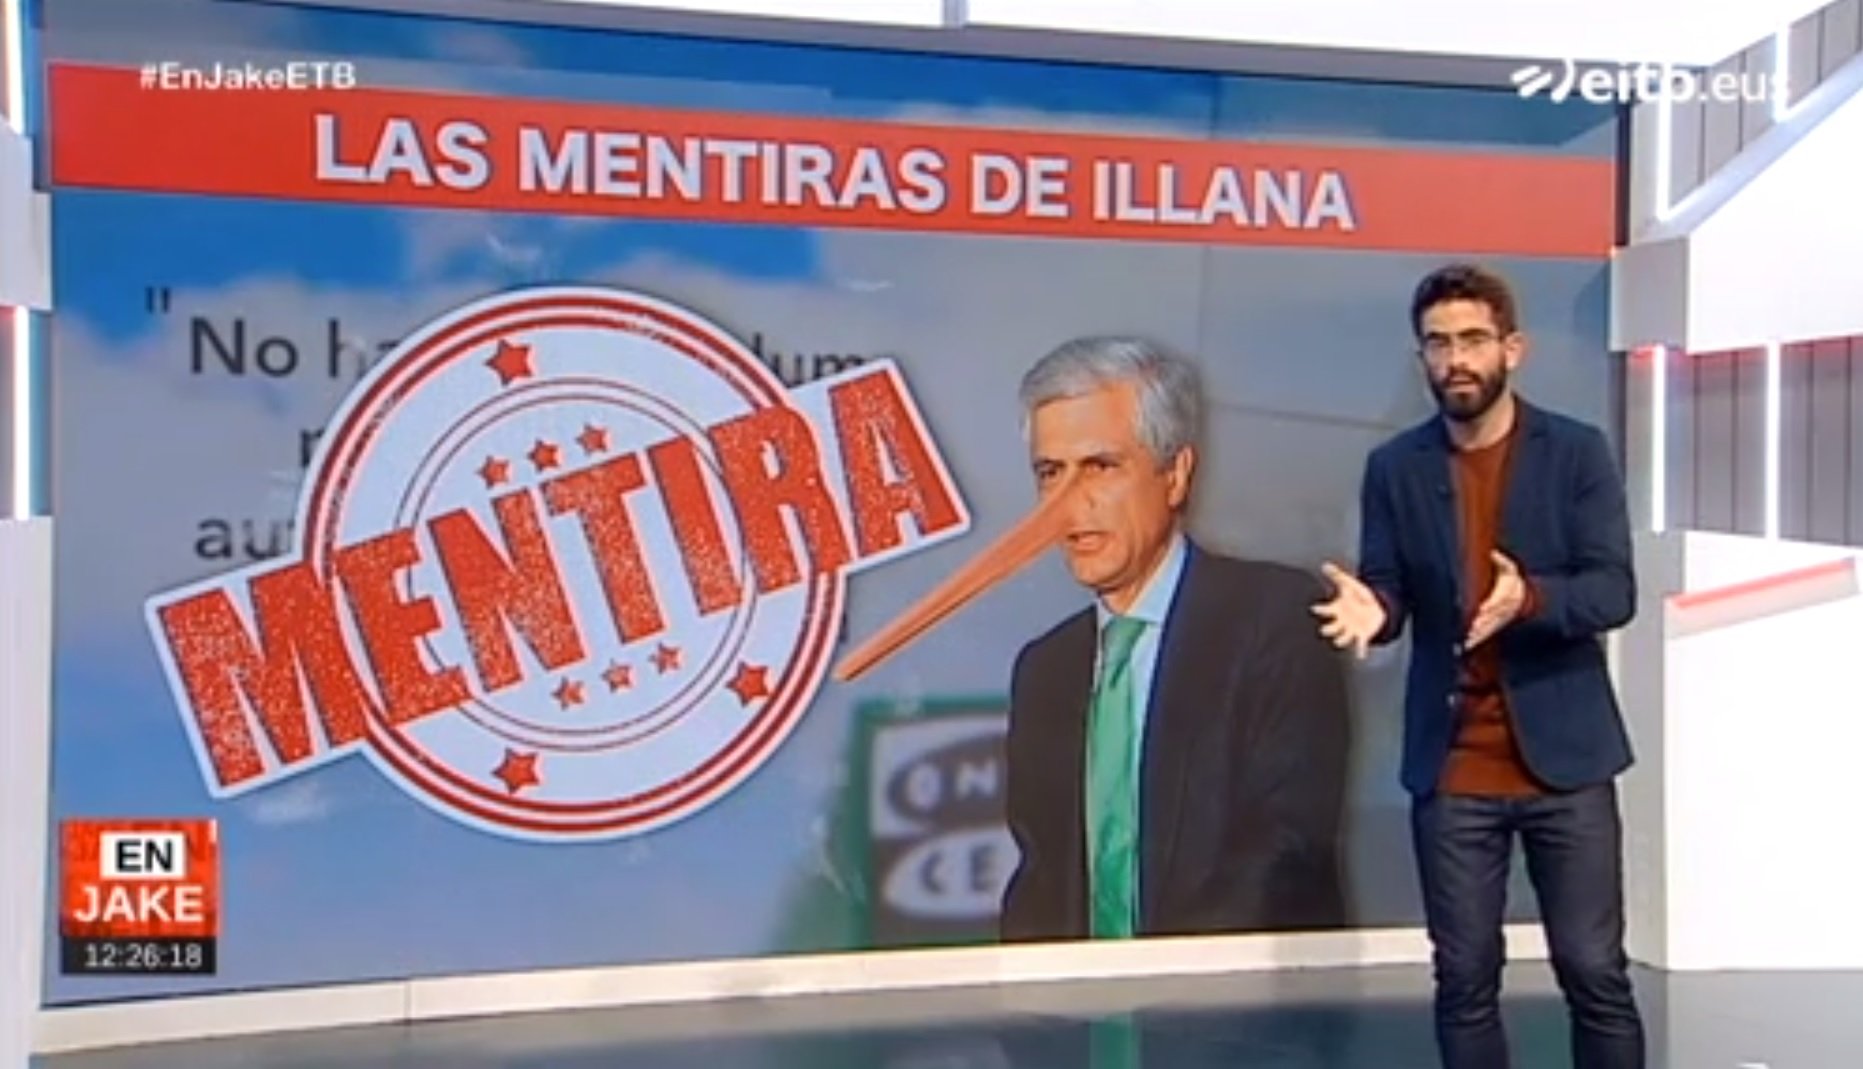 La televisió basca destrossa Suárez Illana per mentider compulsiu